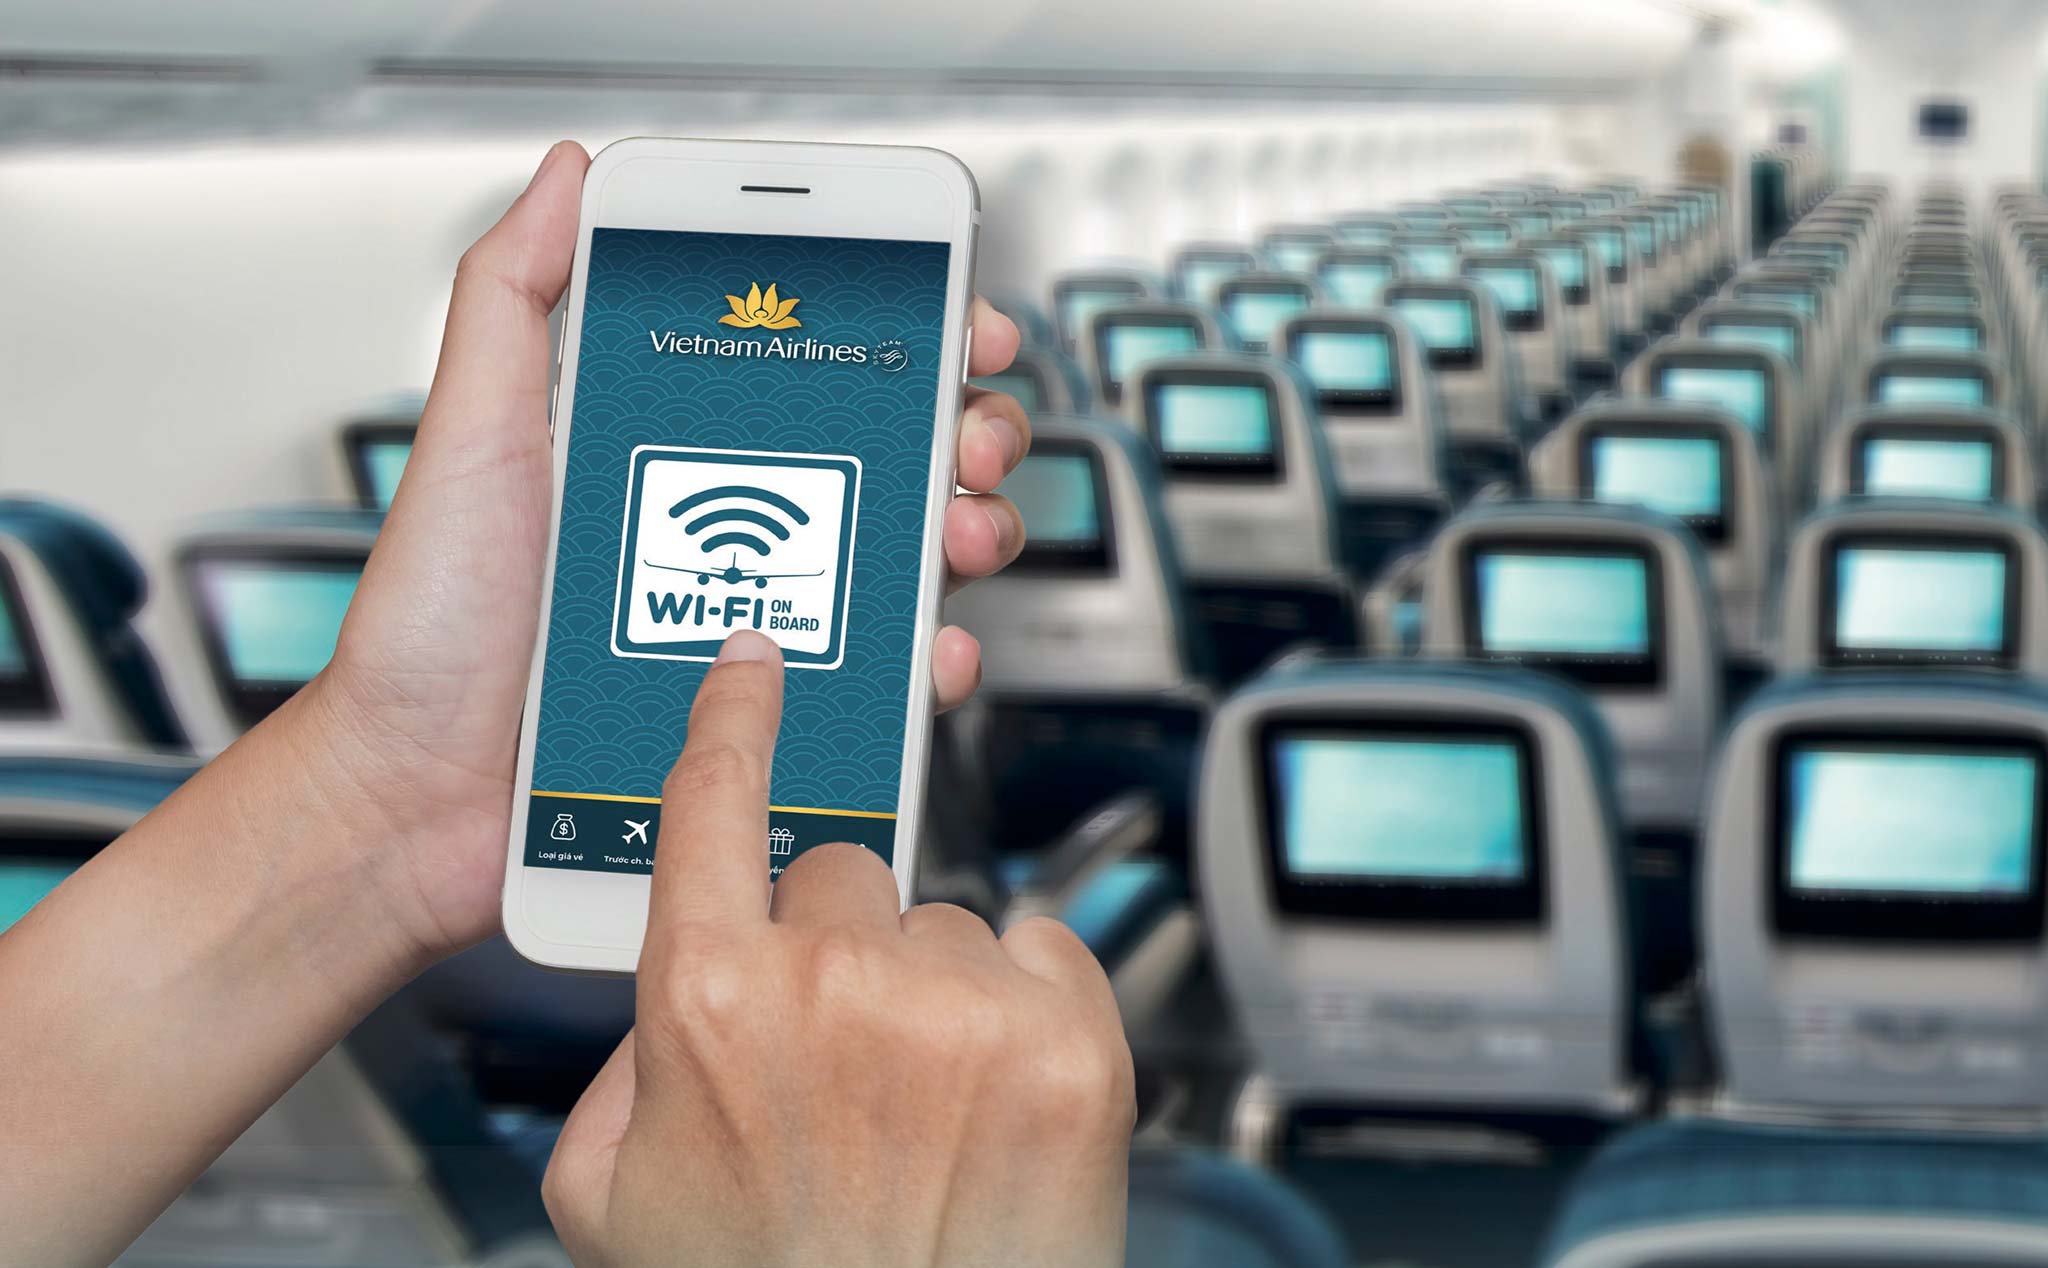 Vietnam Airlines cung cấp Wi-Fi trên máy bay từ ngày 10/10/2019: từ 75.000 đồng